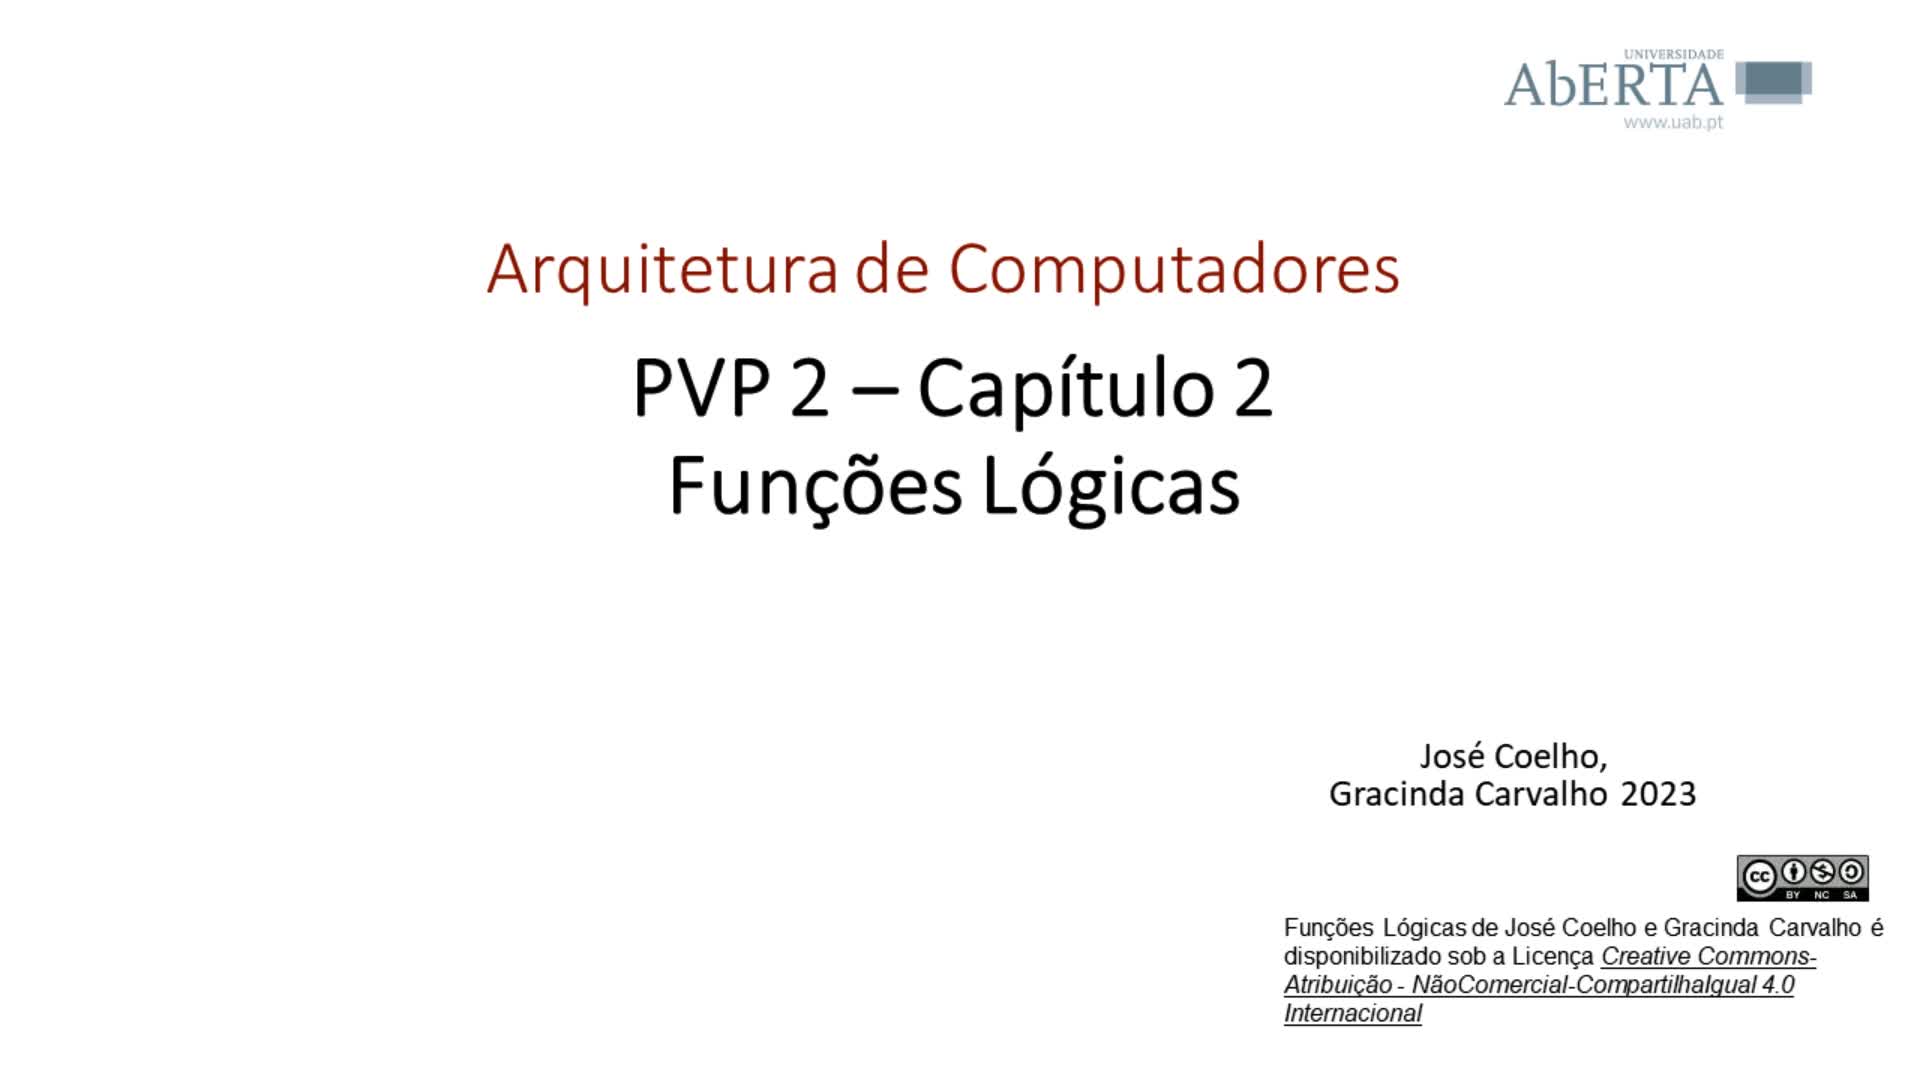  Arquitetura de Computadores. Capítulo 2 - Funções lógicas